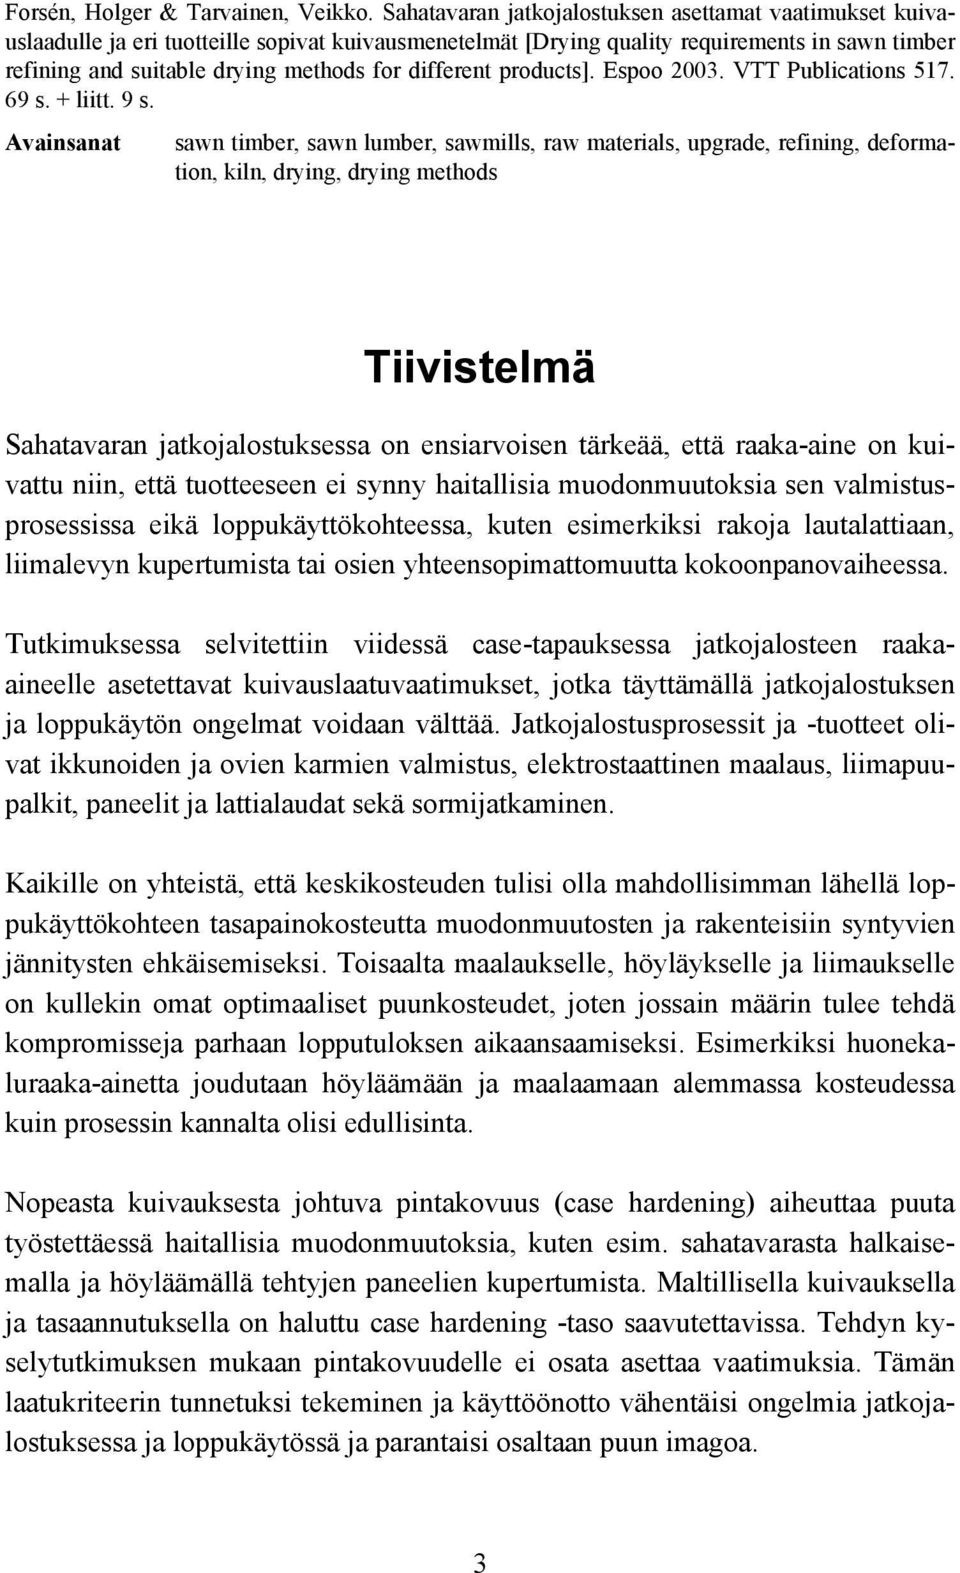 different products]. Espoo 2003. VTT Publications 517. 69 s. + liitt. 9 s.